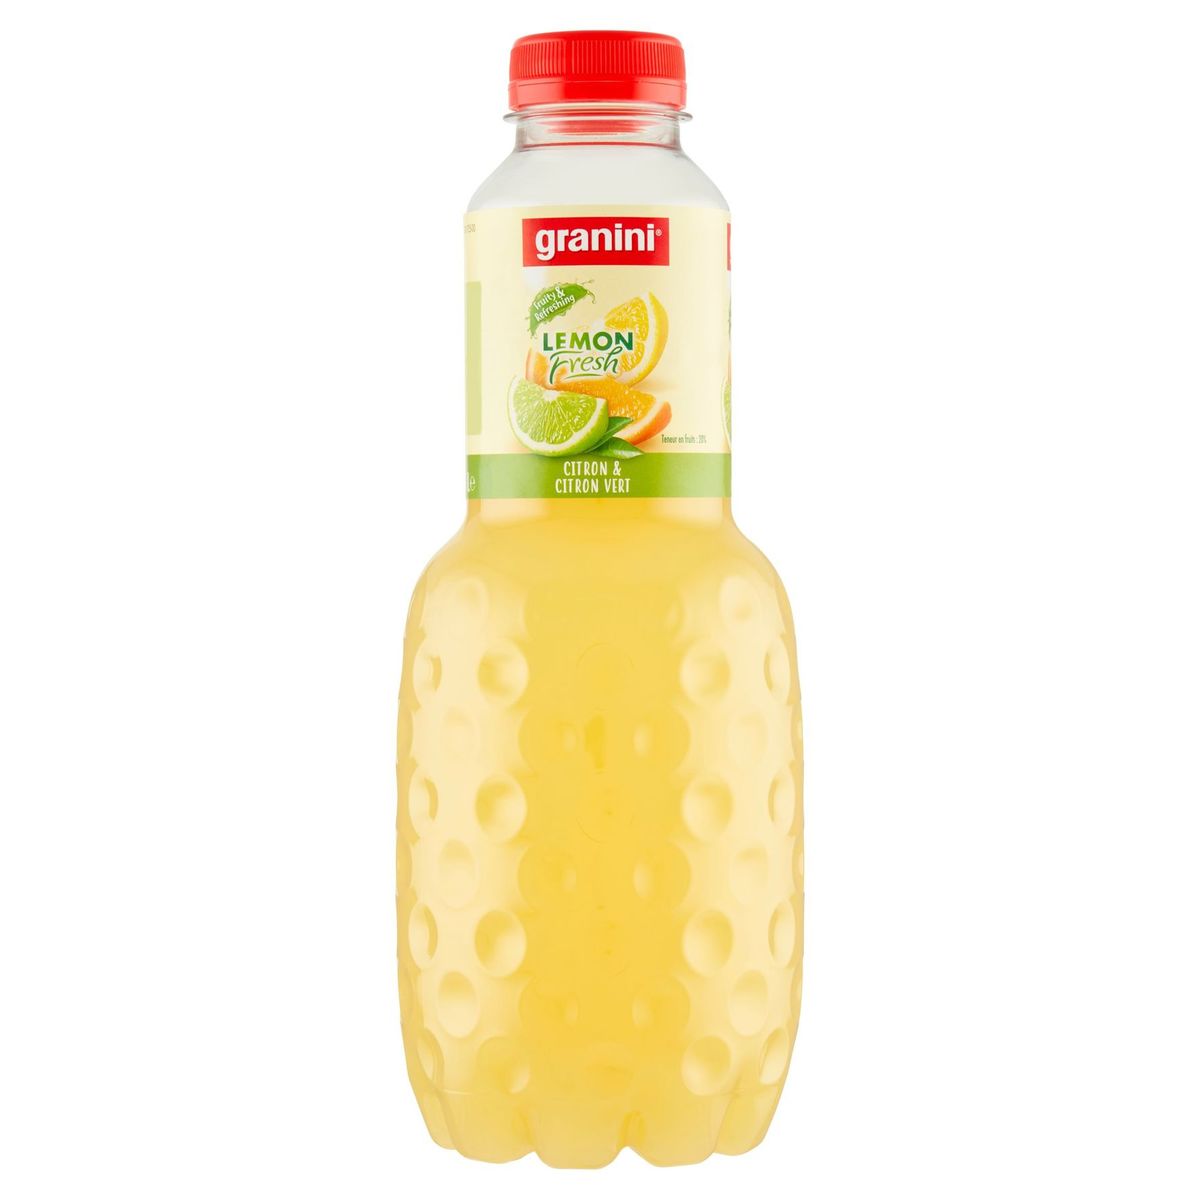 granini Lemon Fresh Limoen-Citroen 6 x 1 L